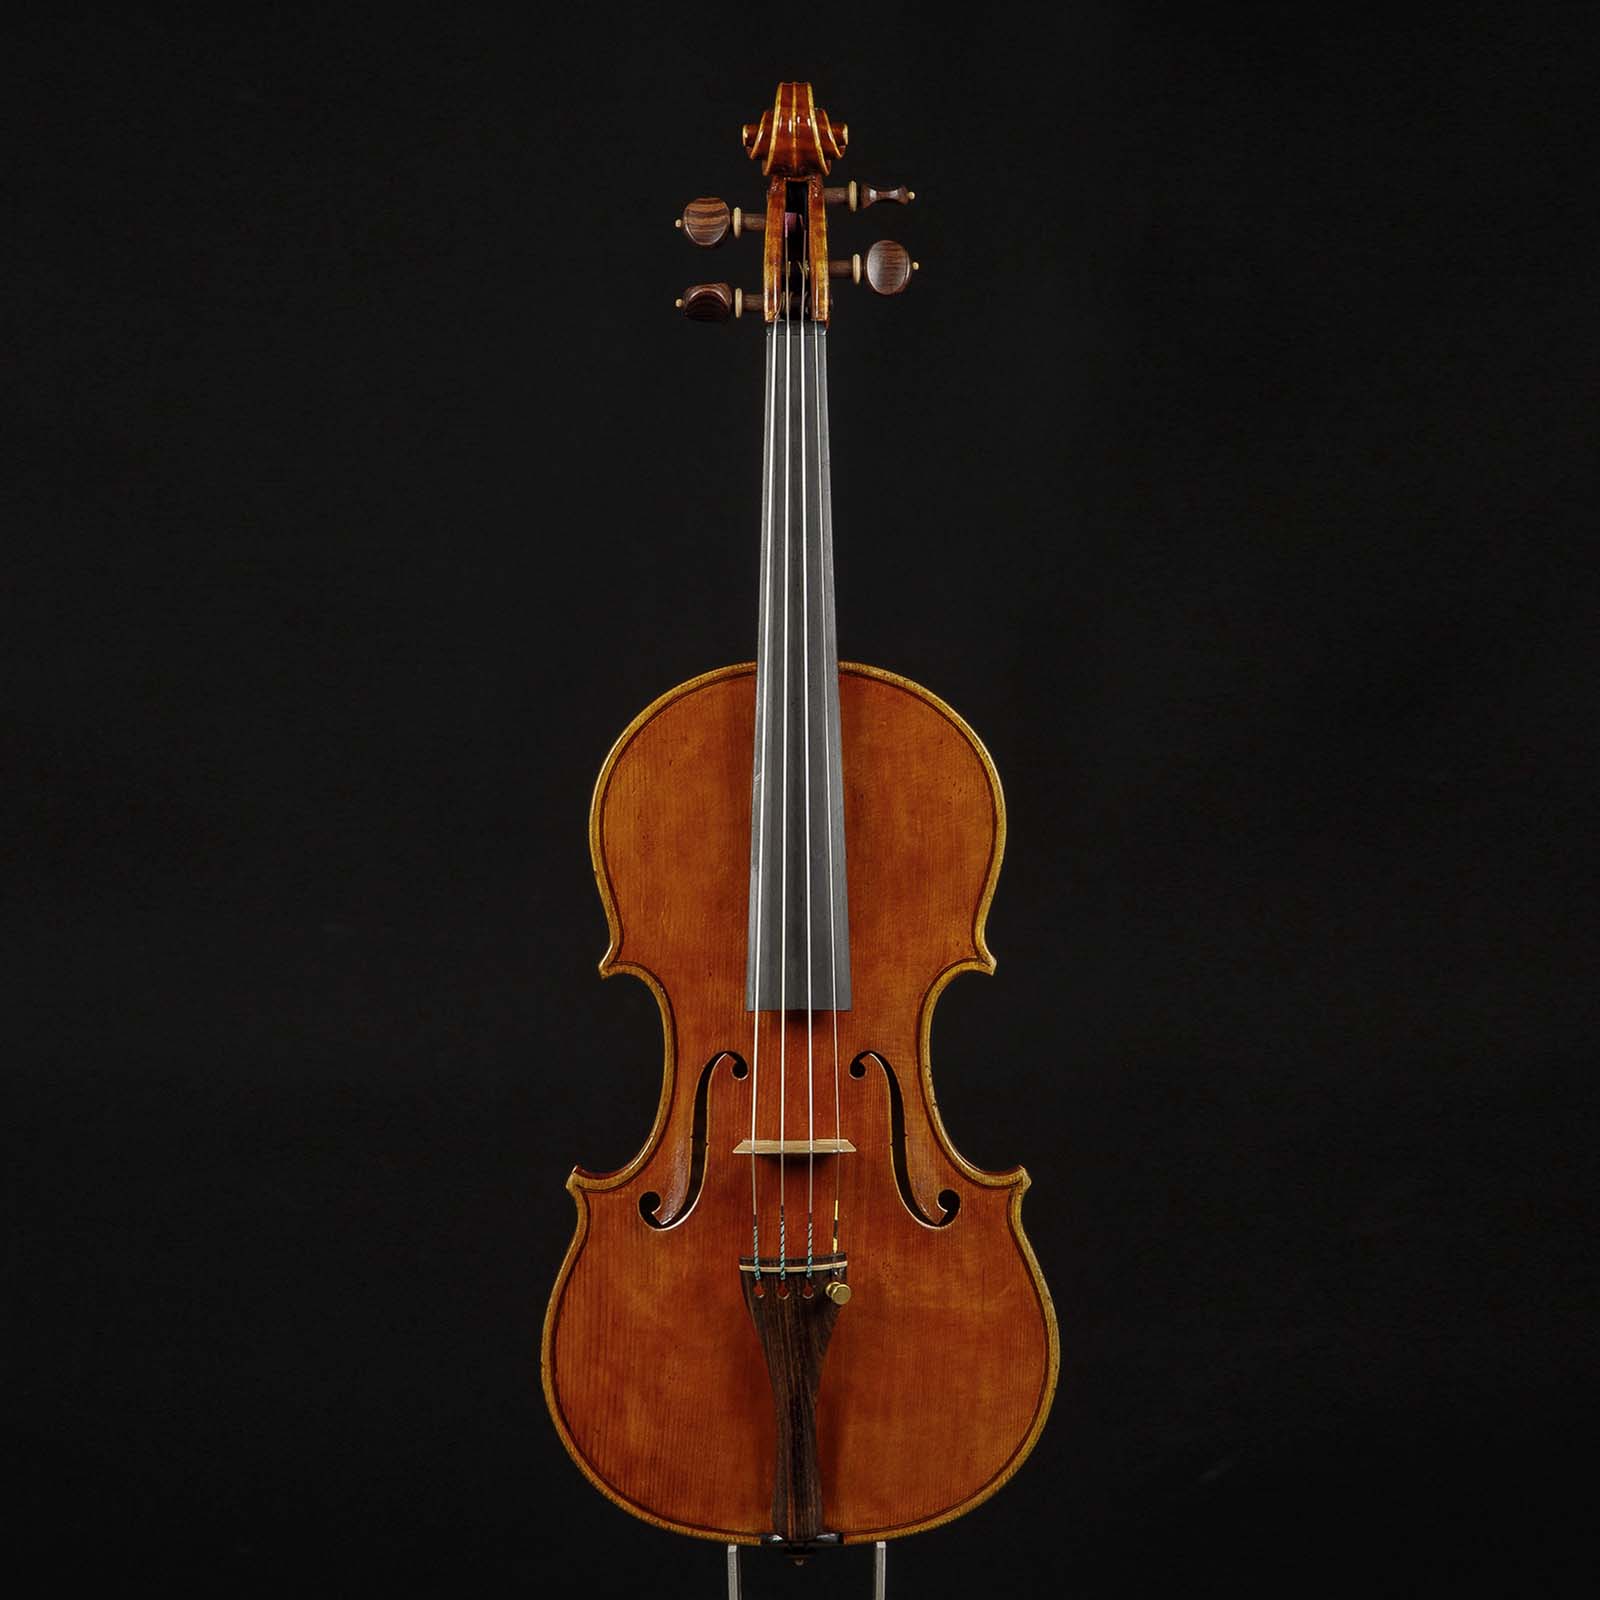 Antonio Stradivari Cremona c.1700 “Teatro Ponchielli“ - Image 1